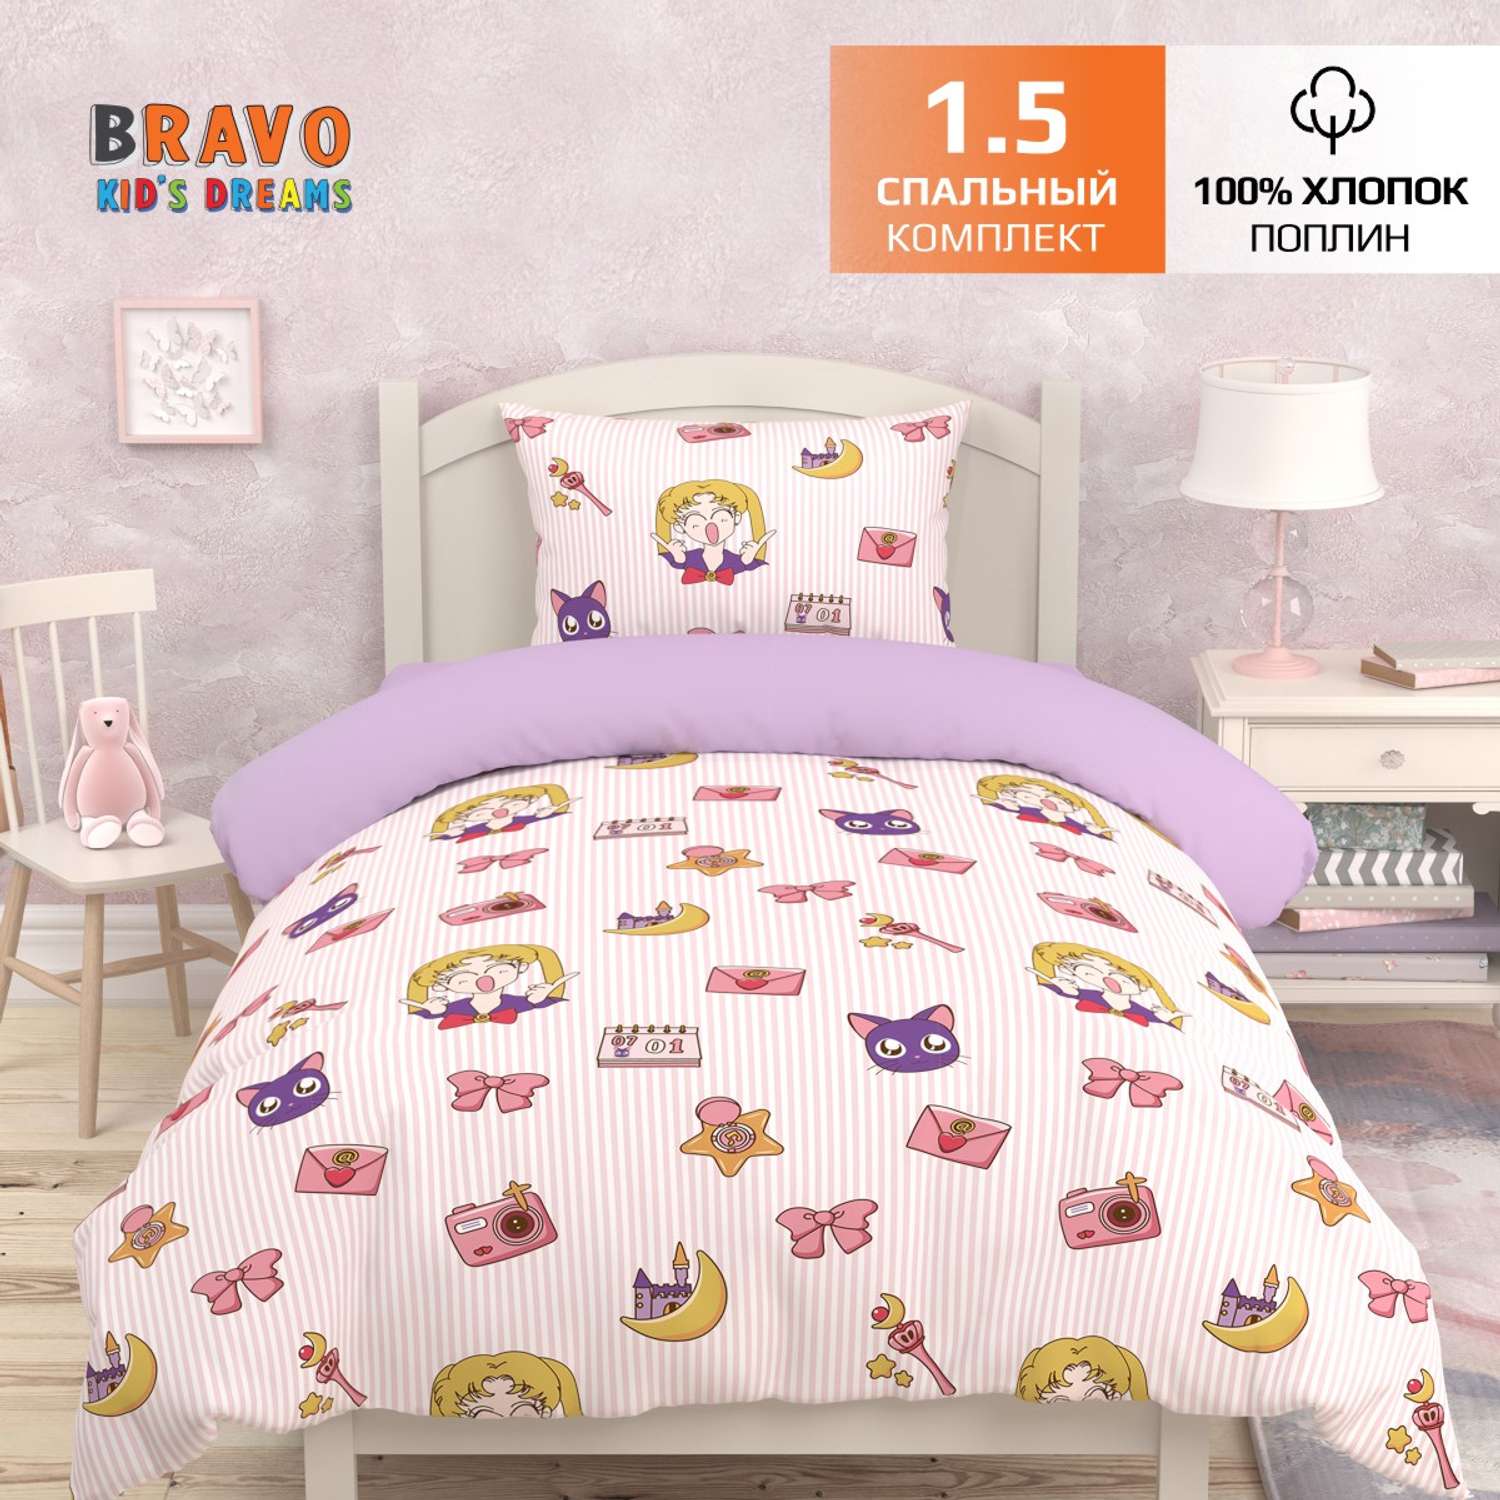 Комплект постельного белья BRAVO kids dreams Аниме 1.5 спальный простыня на резинке 90х200 - фото 2